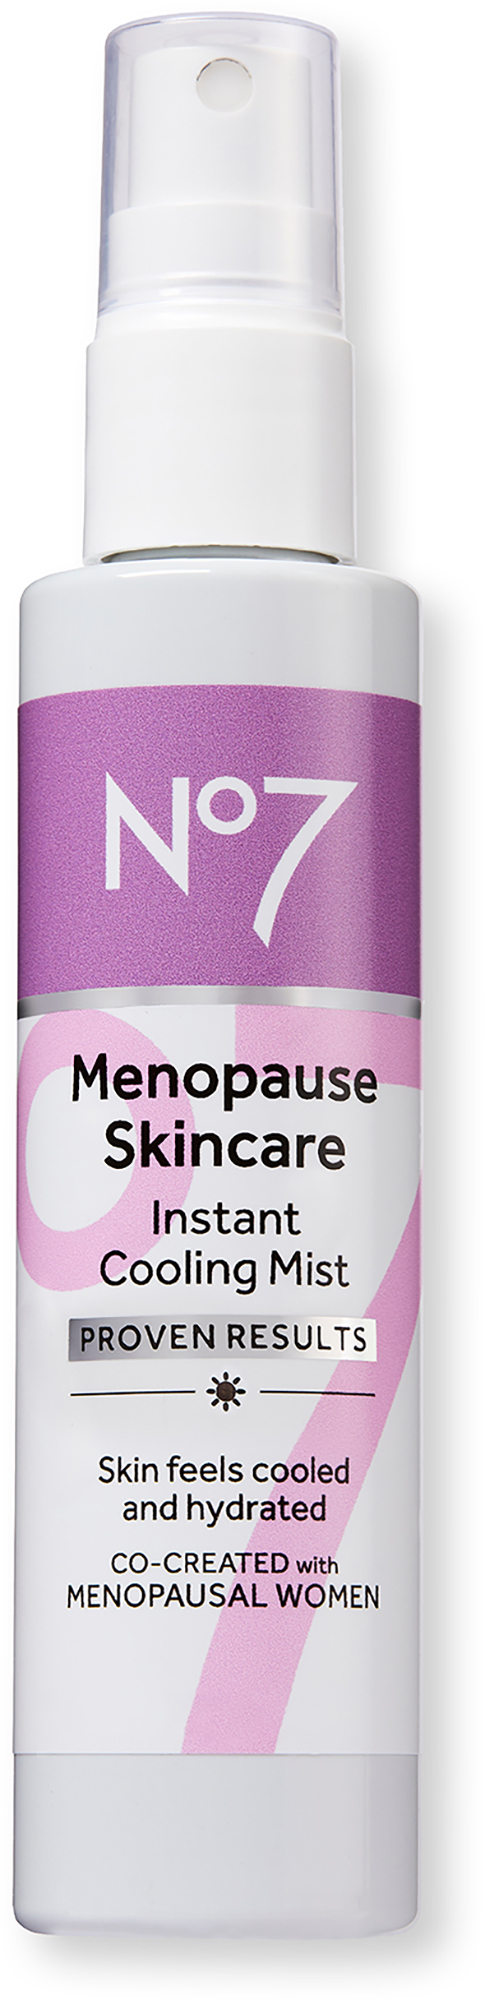 No7 Menopause Skincare